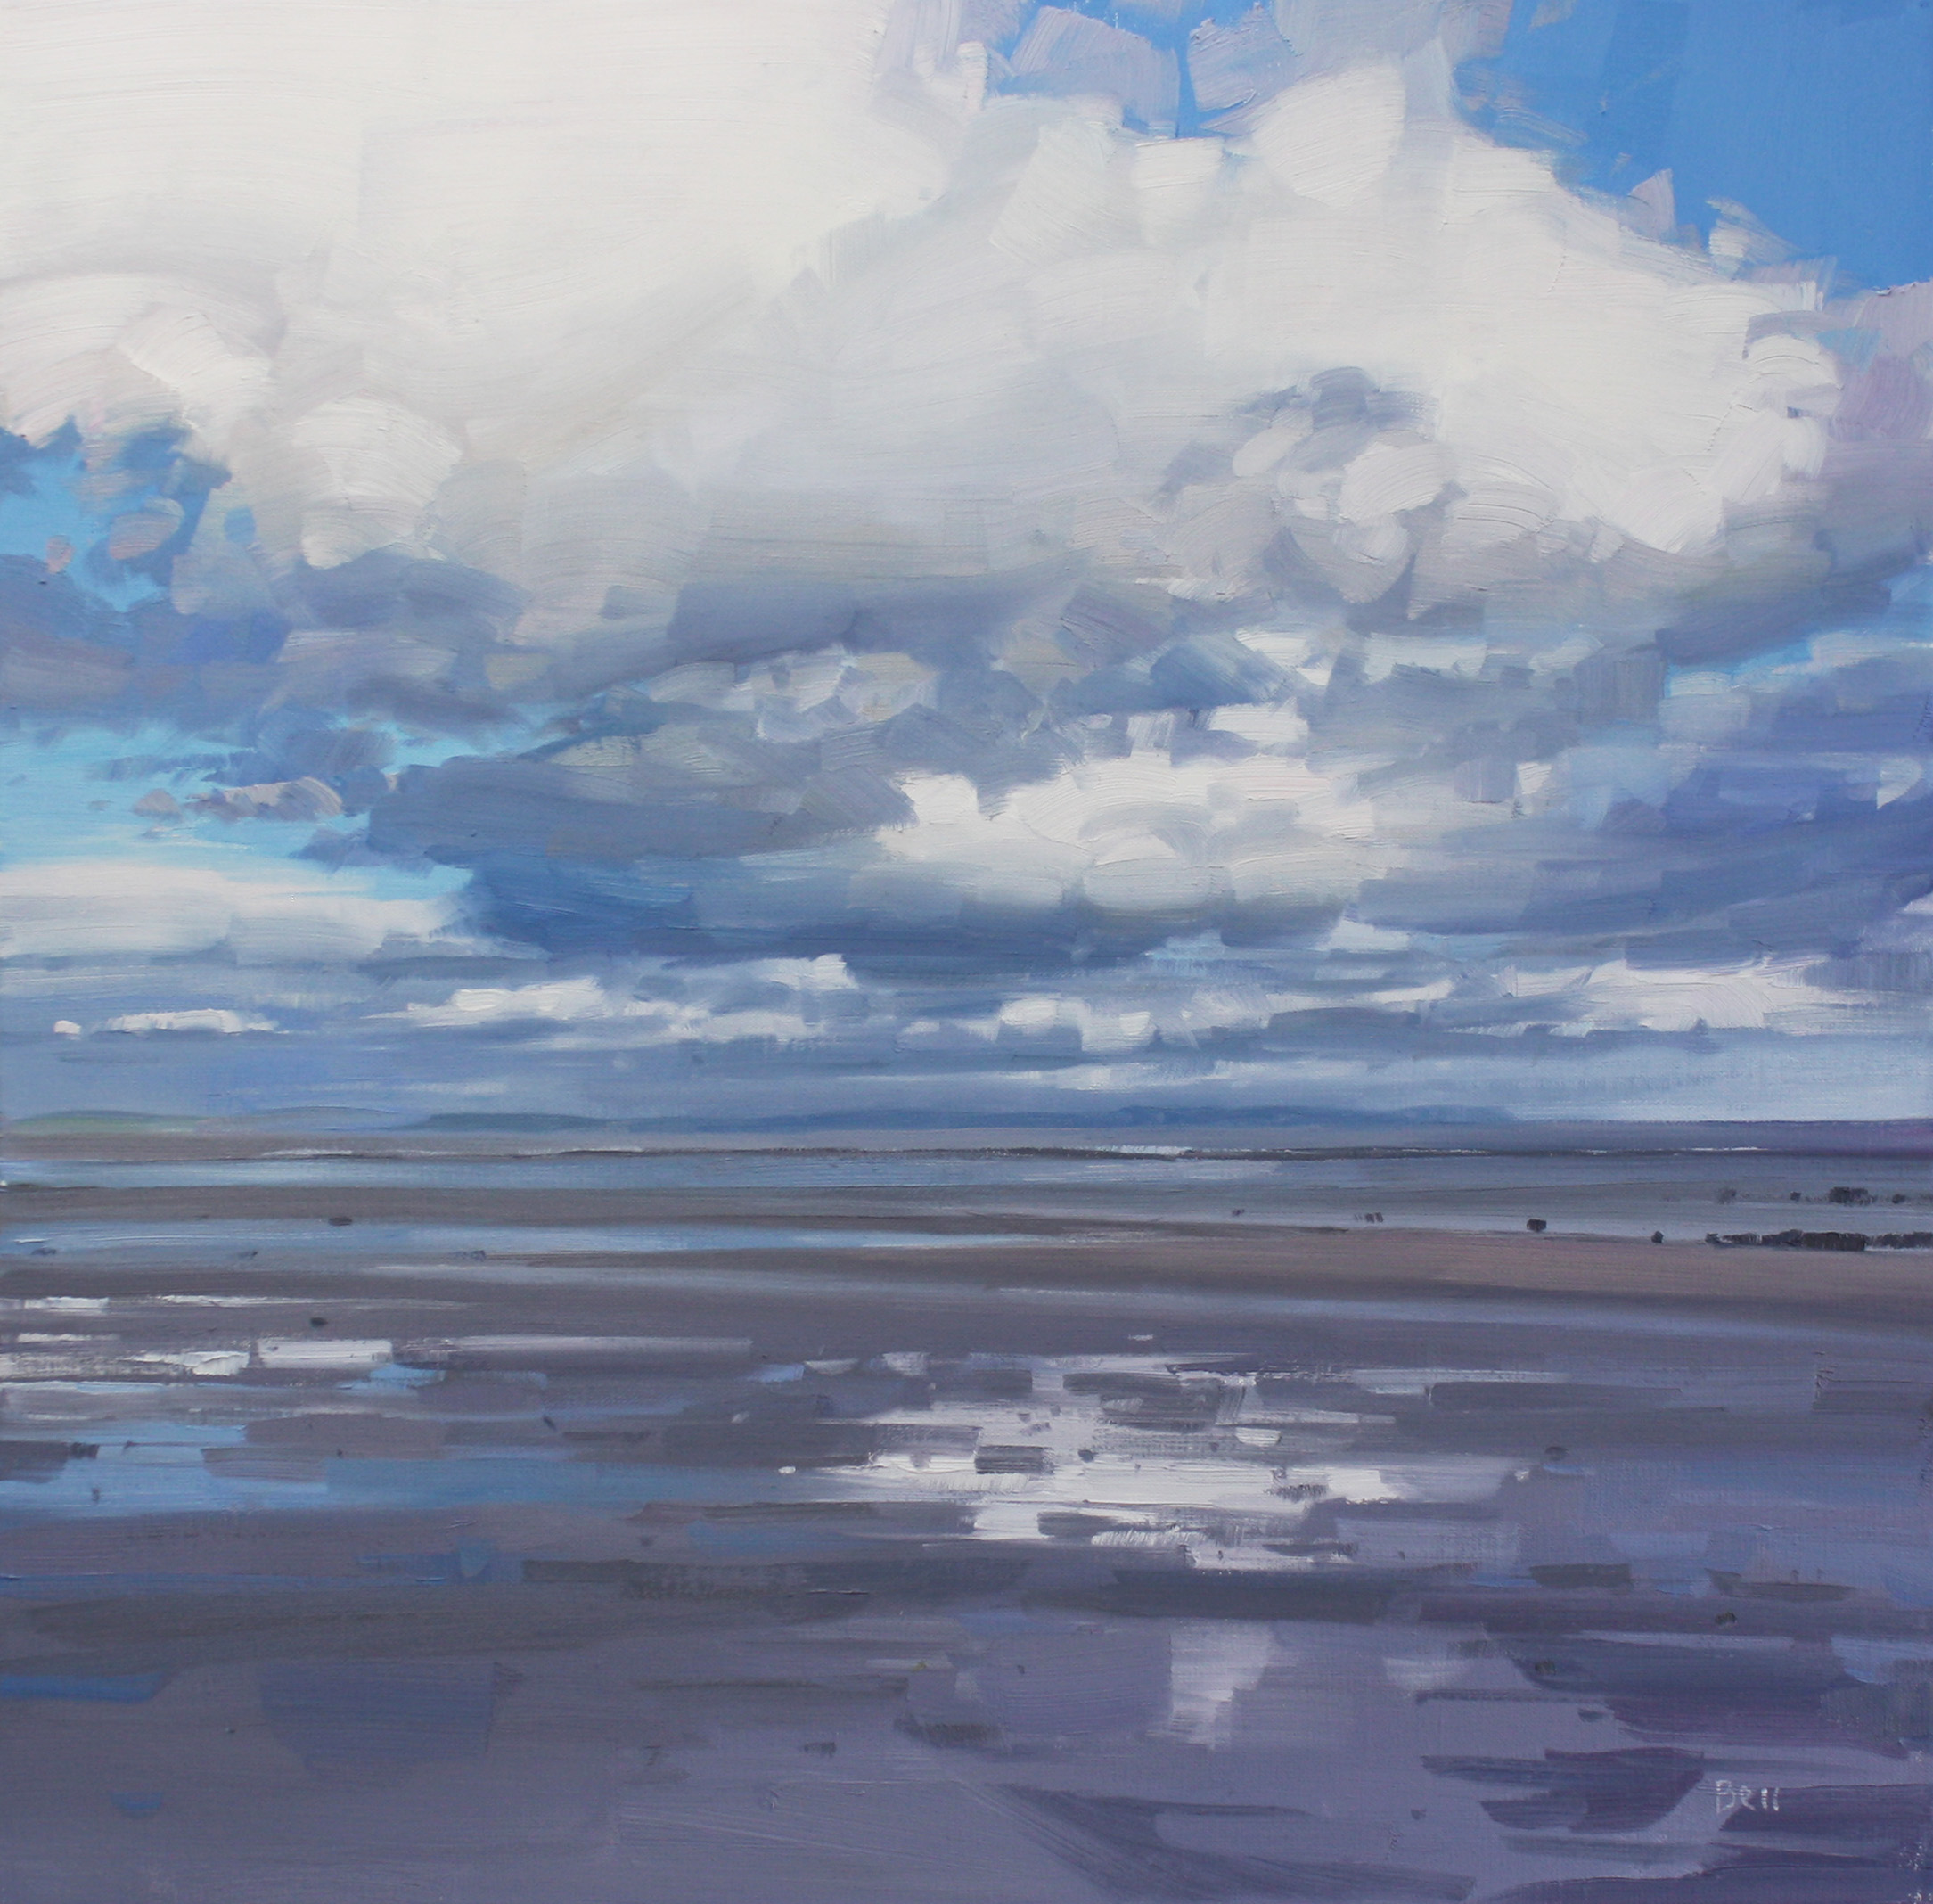 'Luce Bay, Low Tide' by artist John Bell